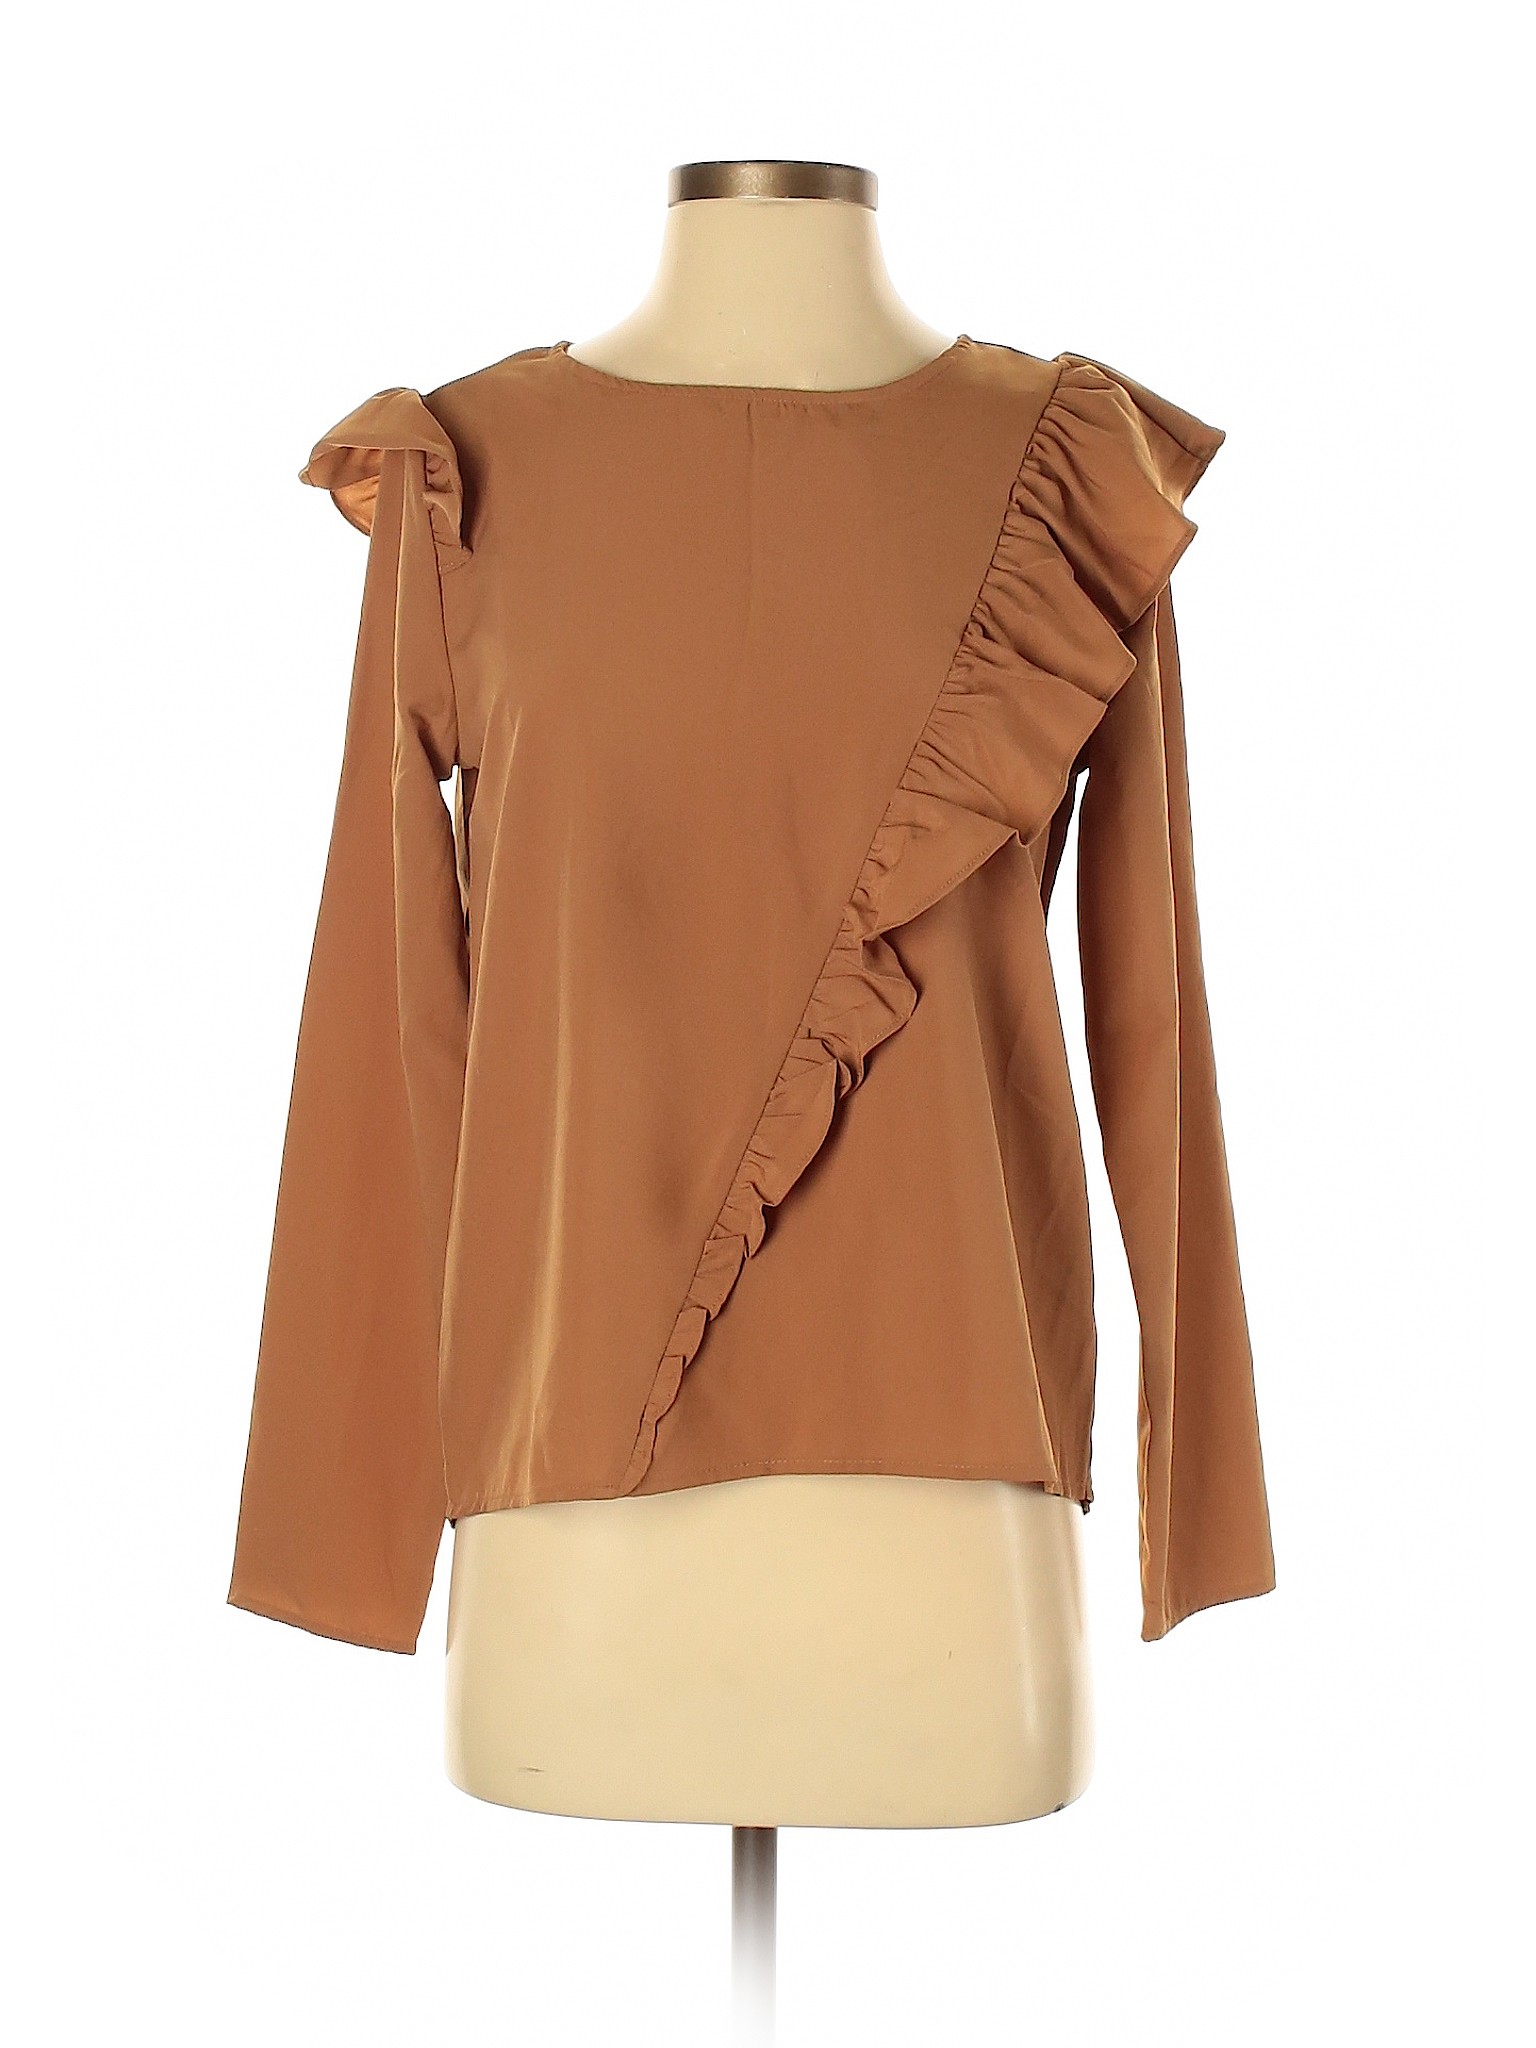 Kensie Women Brown Long Sleeve Blouse S | eBay